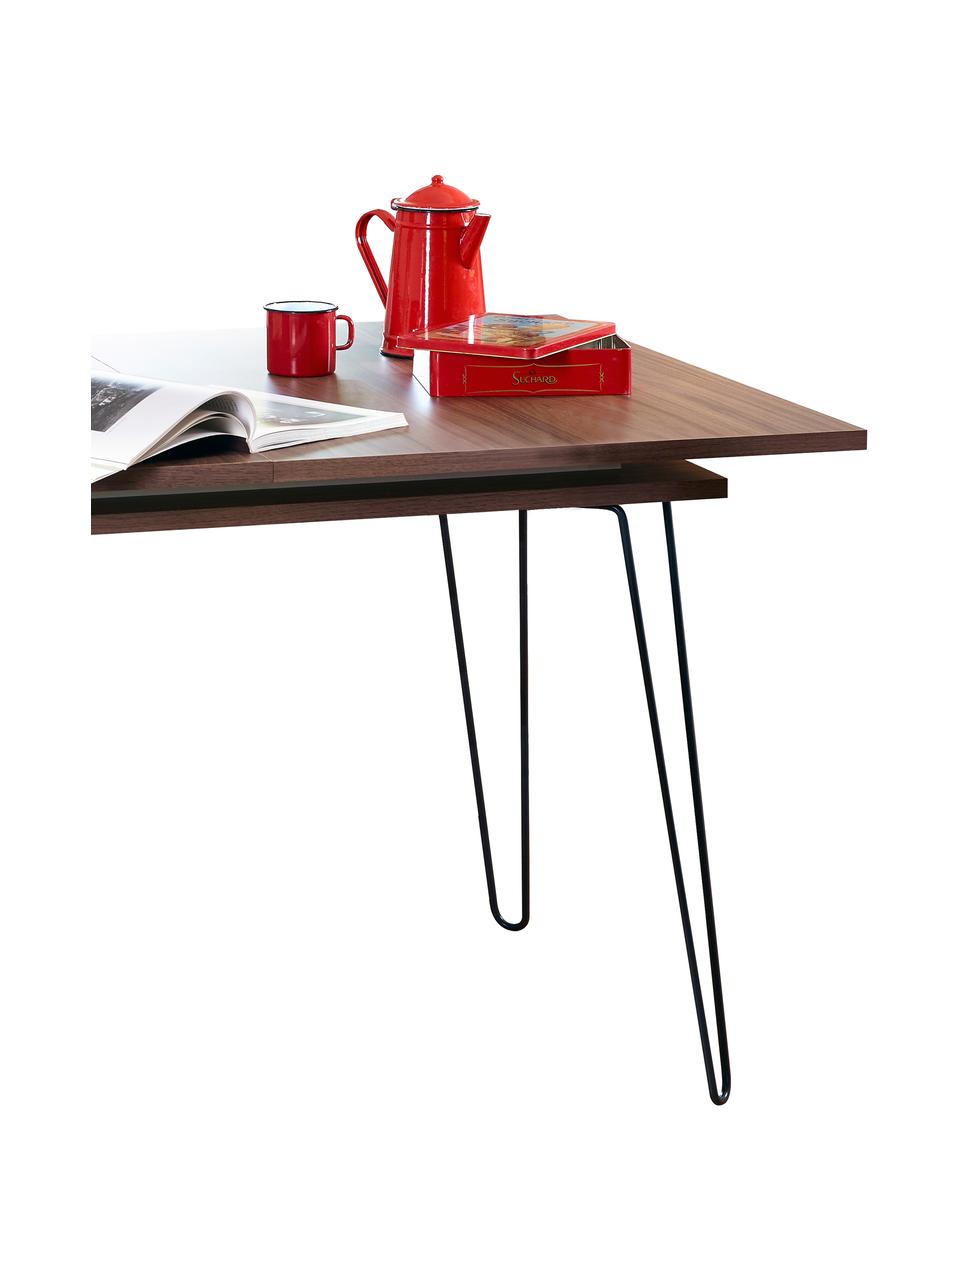 Stół do jadalni Aero, rozkładany, Nogi: metal lakierowany, Fornir z drewna orzechowego, S 134 do 175 x G 90 cm